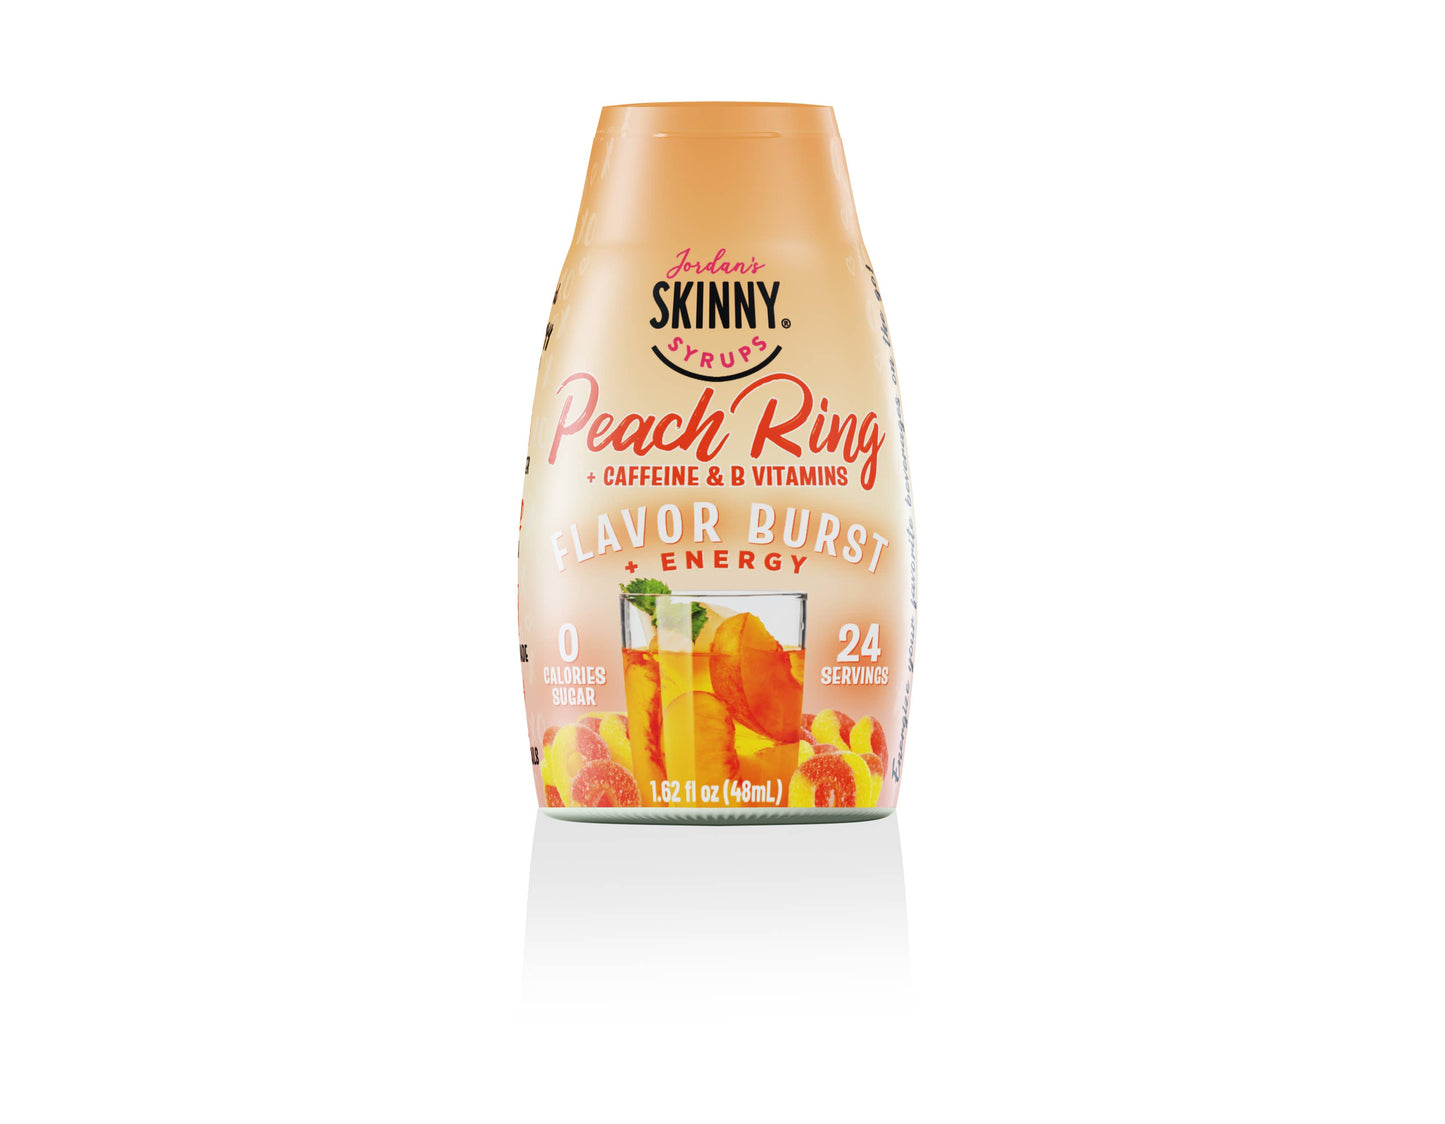 Jordan's Skinny Mixes - Flavor Burst - Sugar Free Peach Ring + Energy